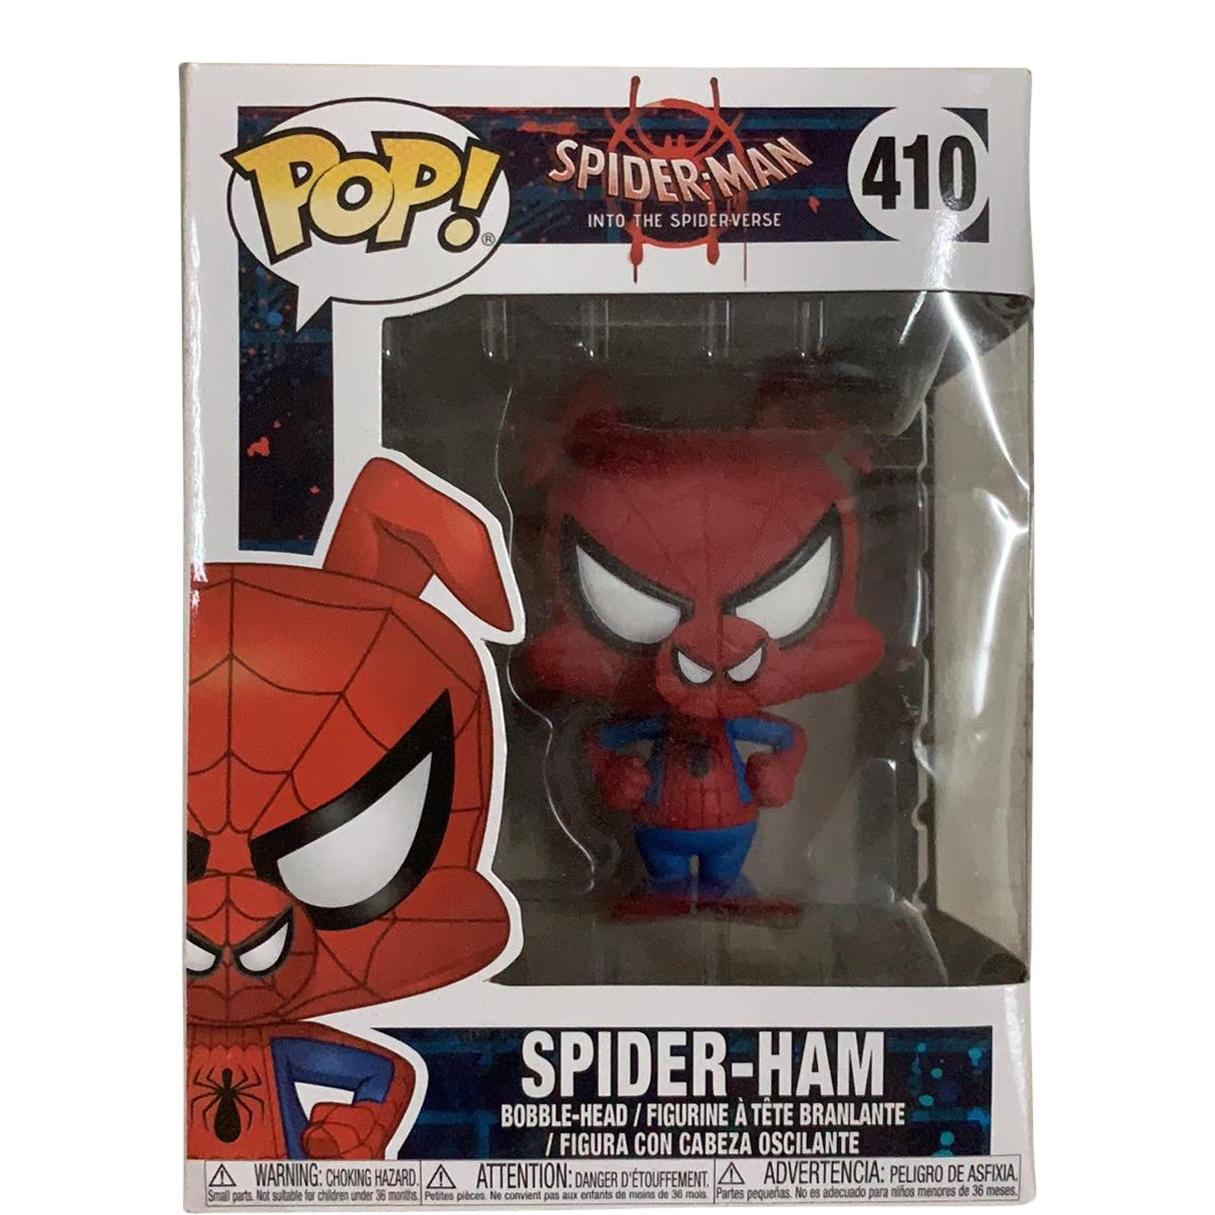 Funko Pop! Spider-Man into the Spider-Verse Spider-Ham Bobble-Head